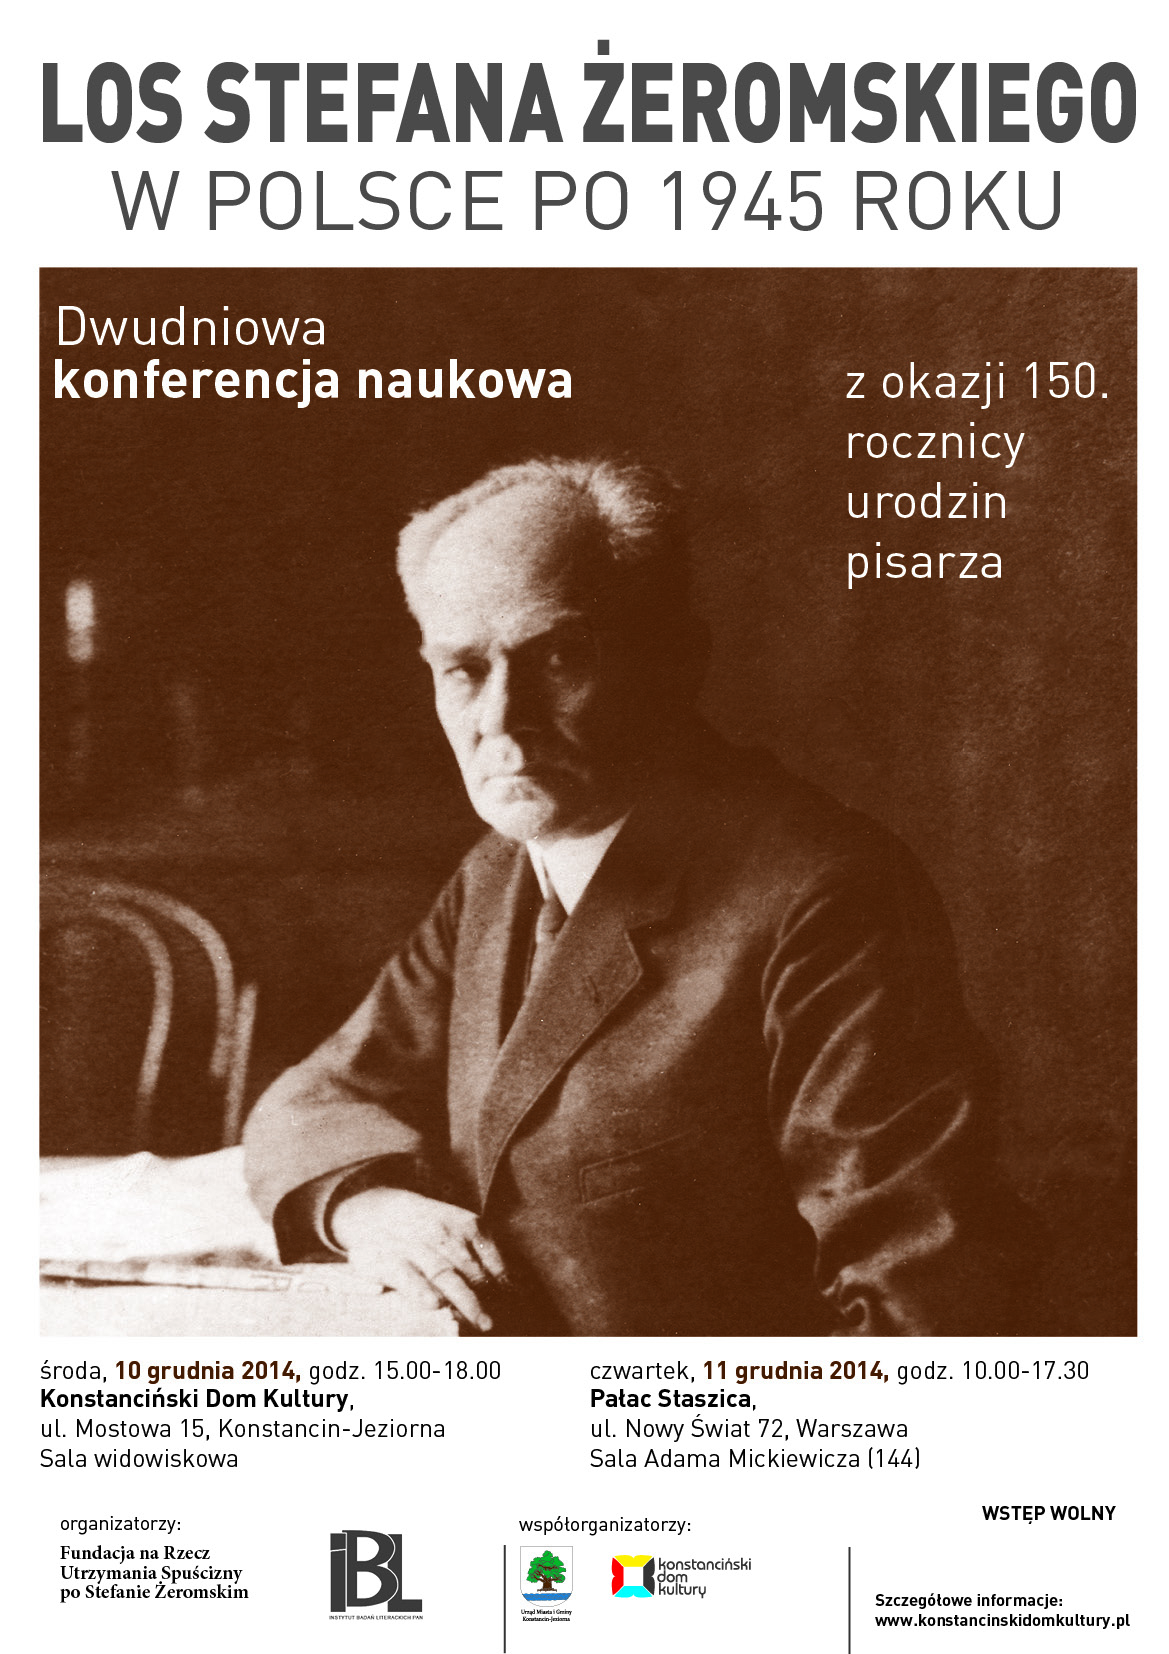 Los Stefana Żeromskiego w Polsce po 1945 roku - konferencja naukowa